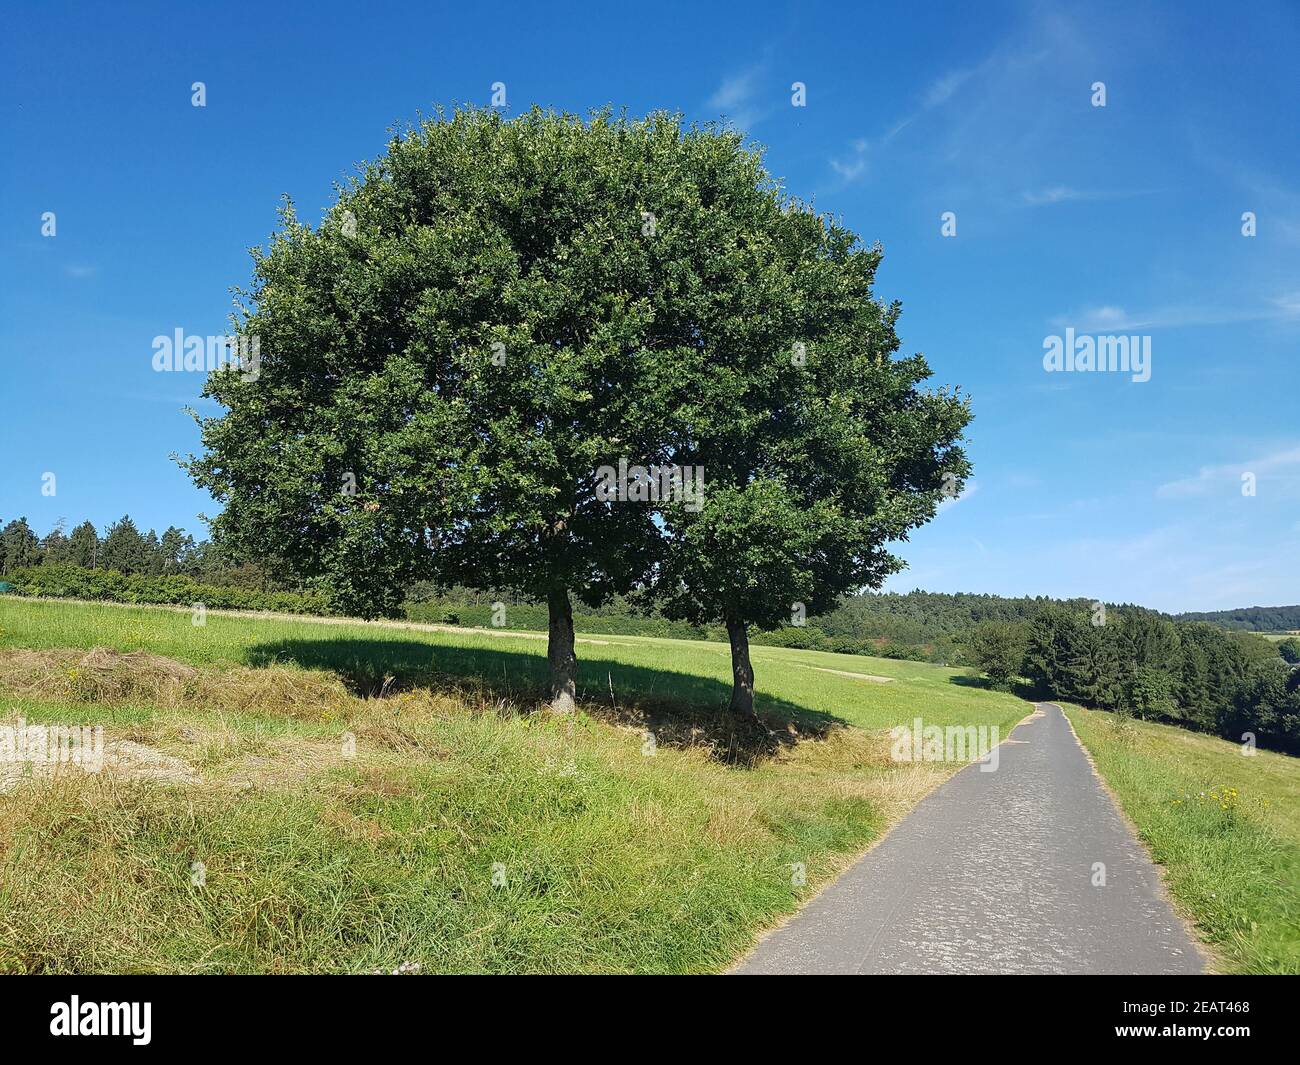 Eichenbaum, Quercus  Robur  Eiche Stock Photo